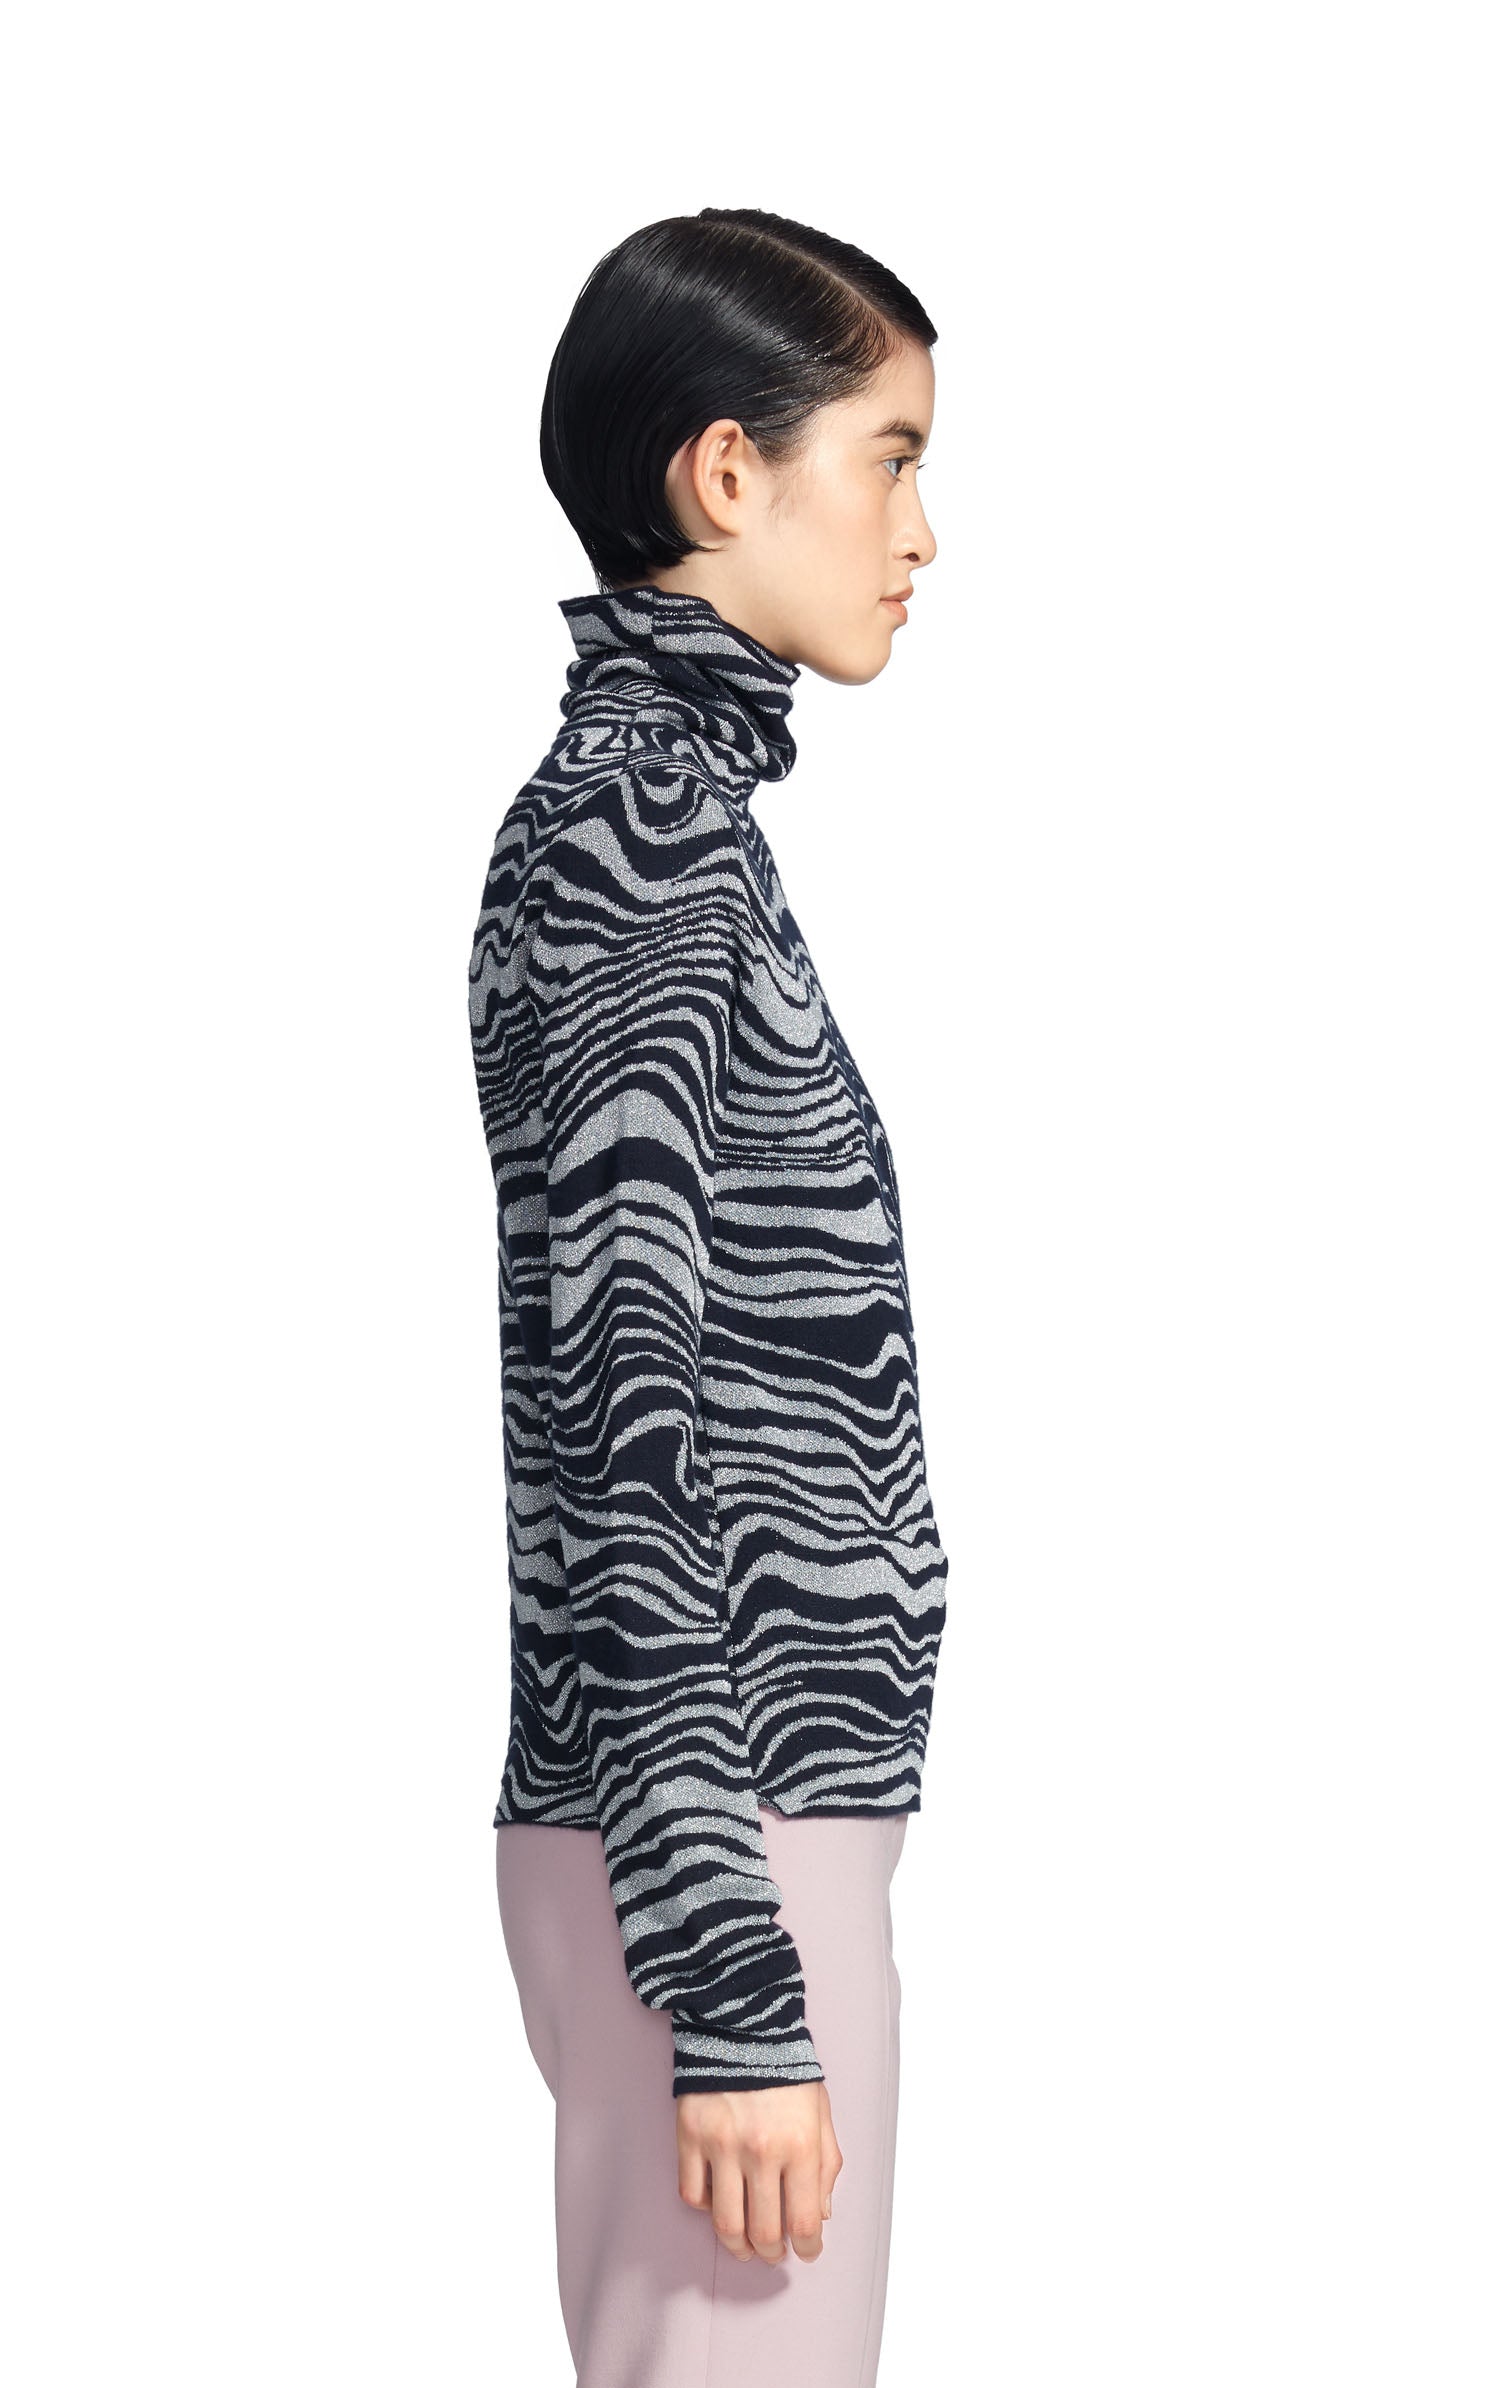 Sies Marjan - Roos Waves Jacquard Turtleneck Sweater - Waves Print ...